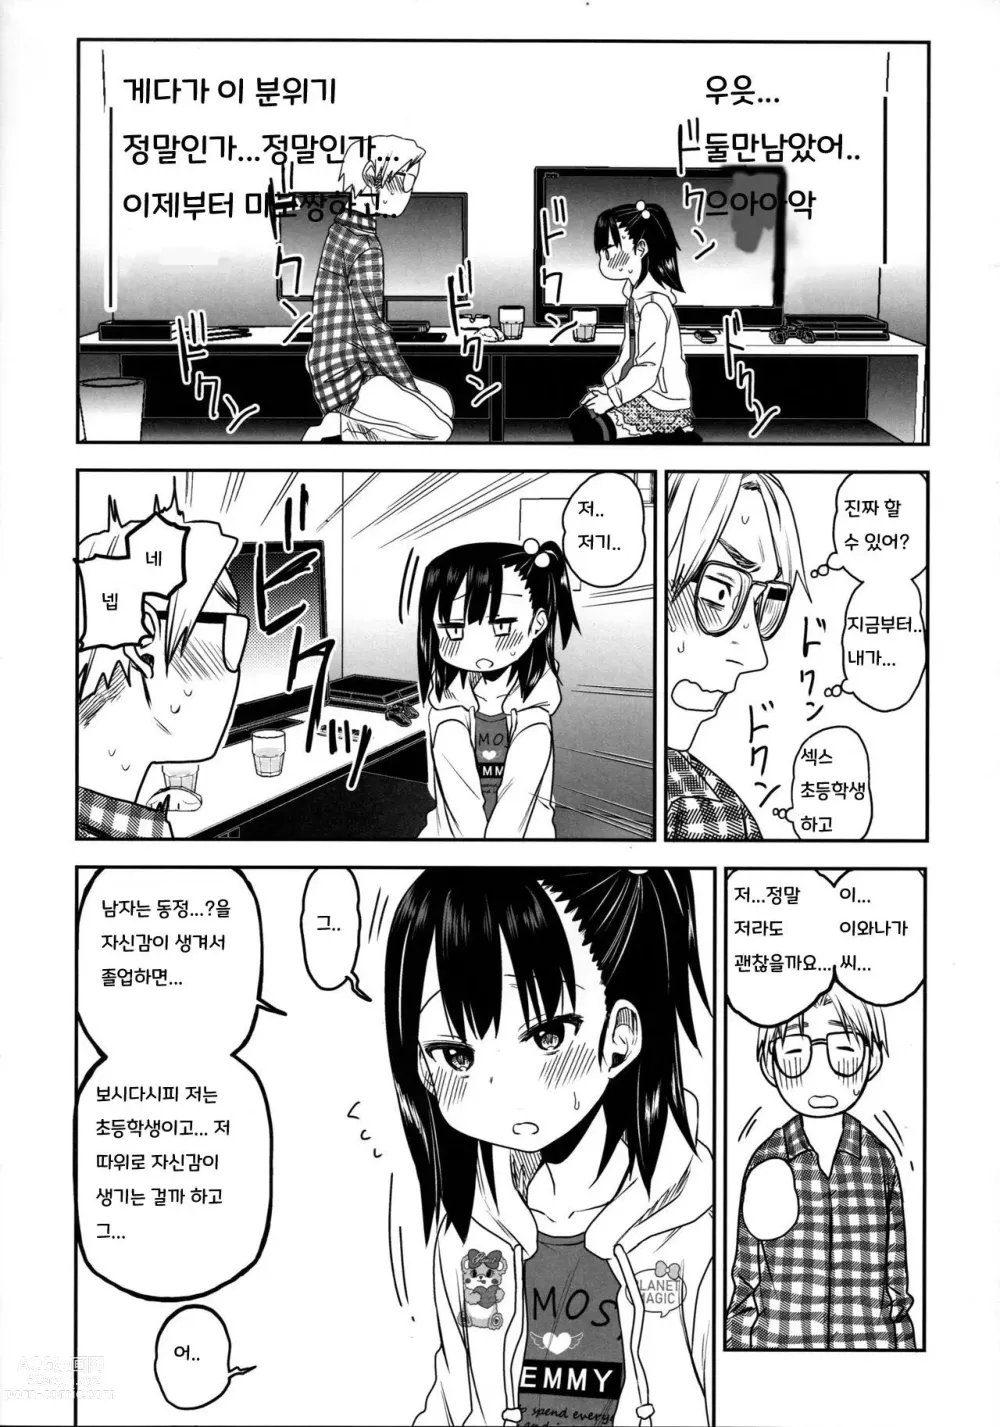 Page 16 of doujinshi Tonari no Mako-chan Season 2 Vol. 2